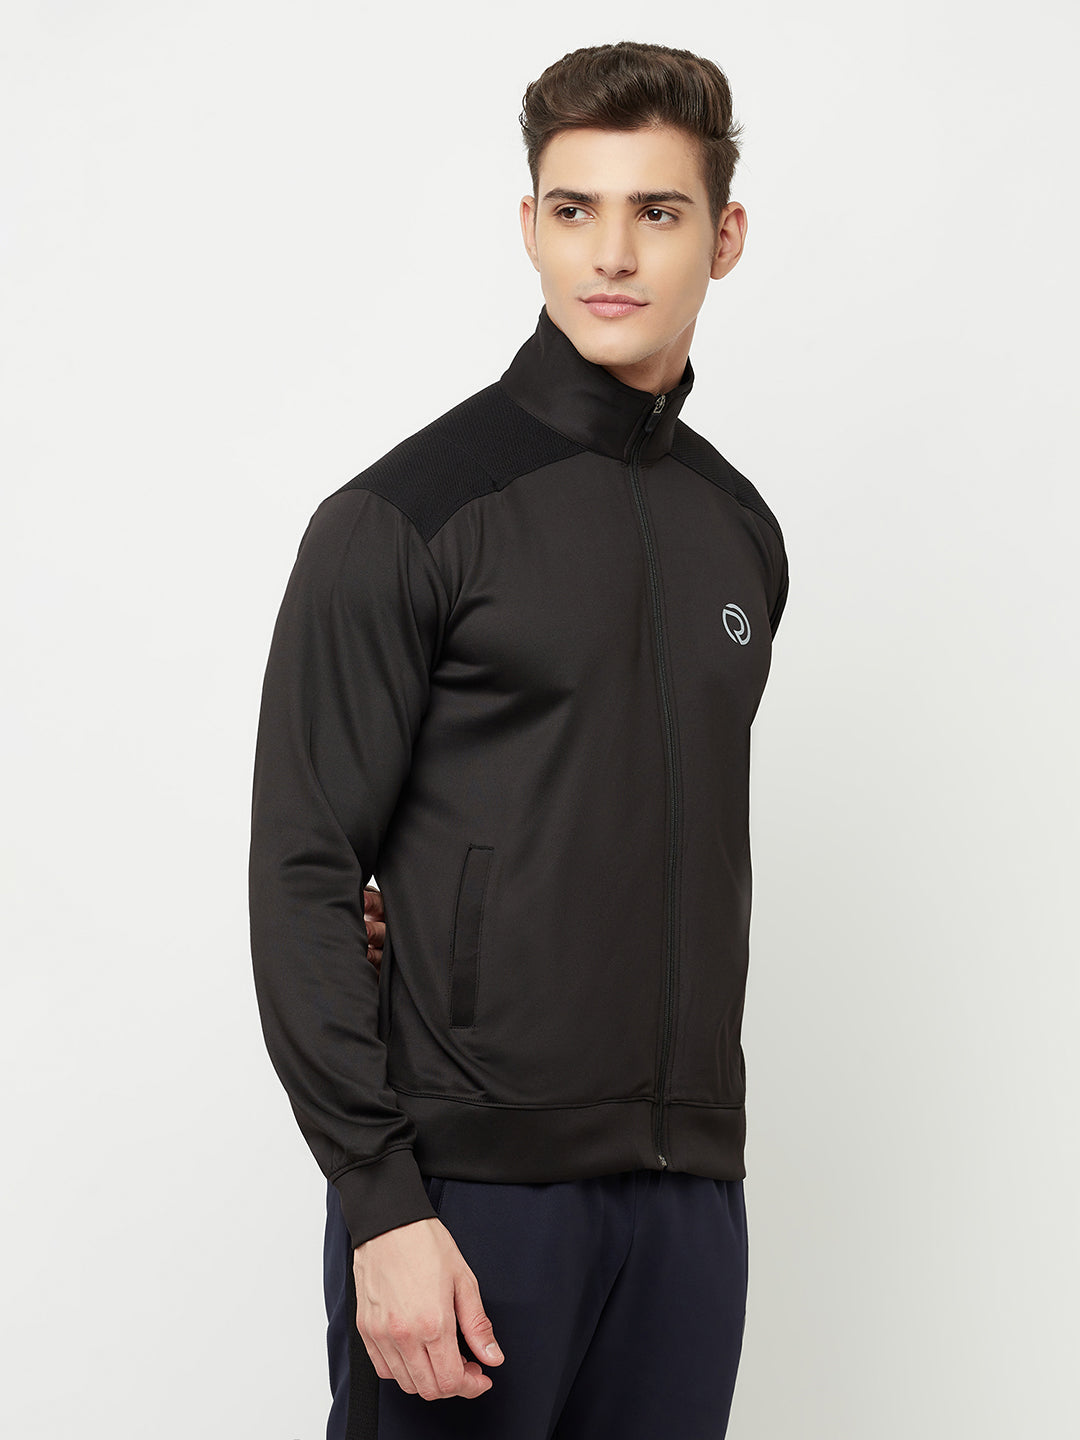 Men's Sports Track Pant & Sports Jacket Combo - Black